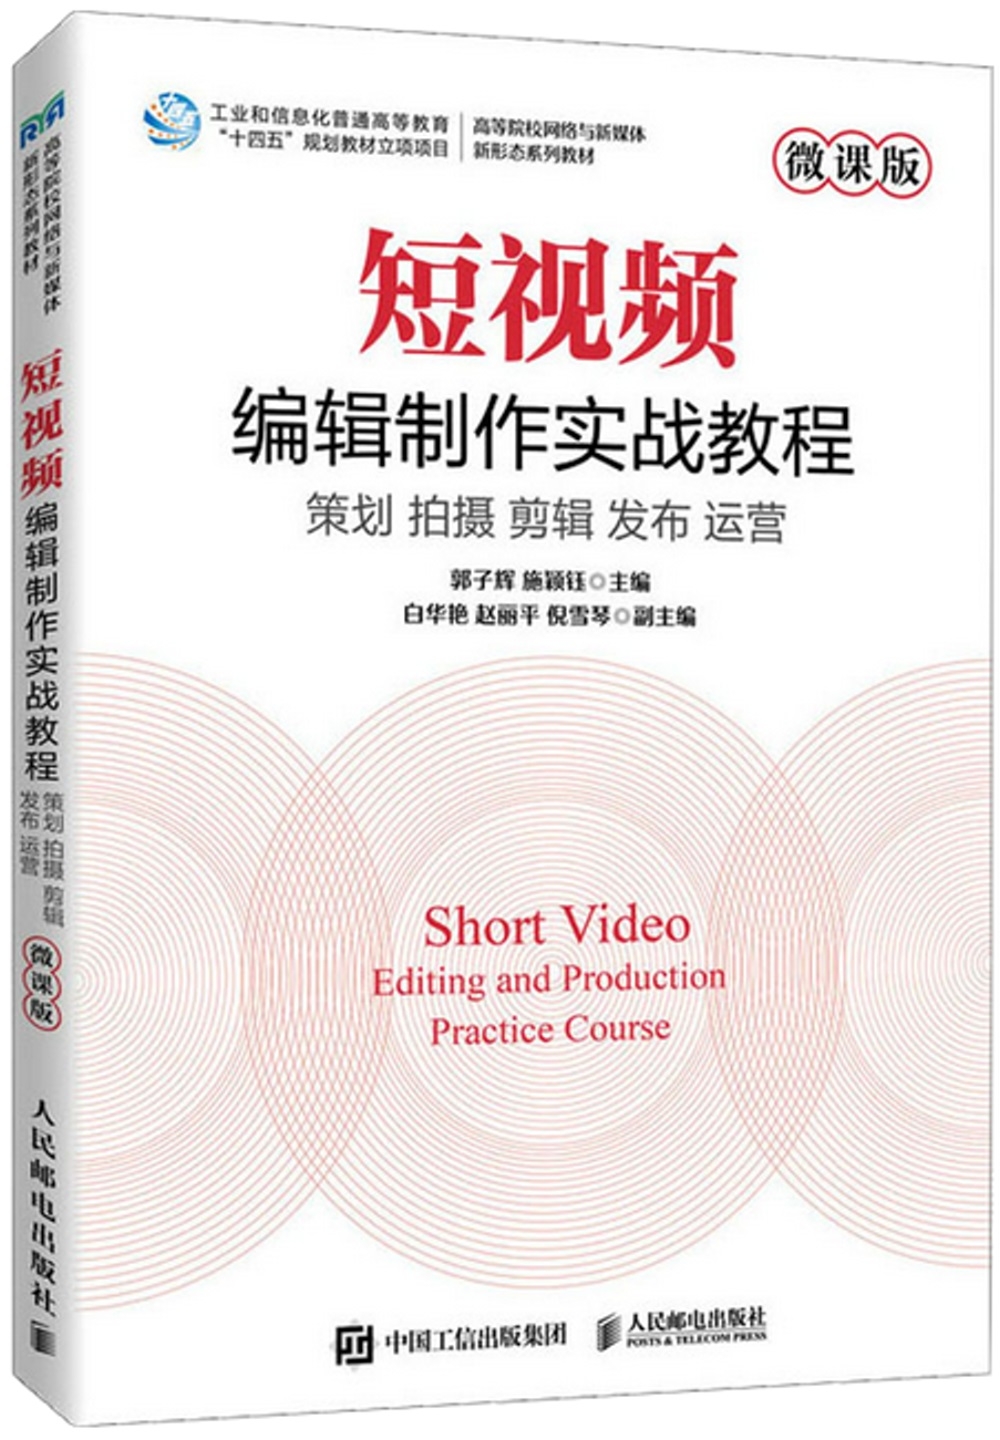 短視頻編輯製作實戰教程：策劃 拍攝 剪輯 發布 運營（微課版）